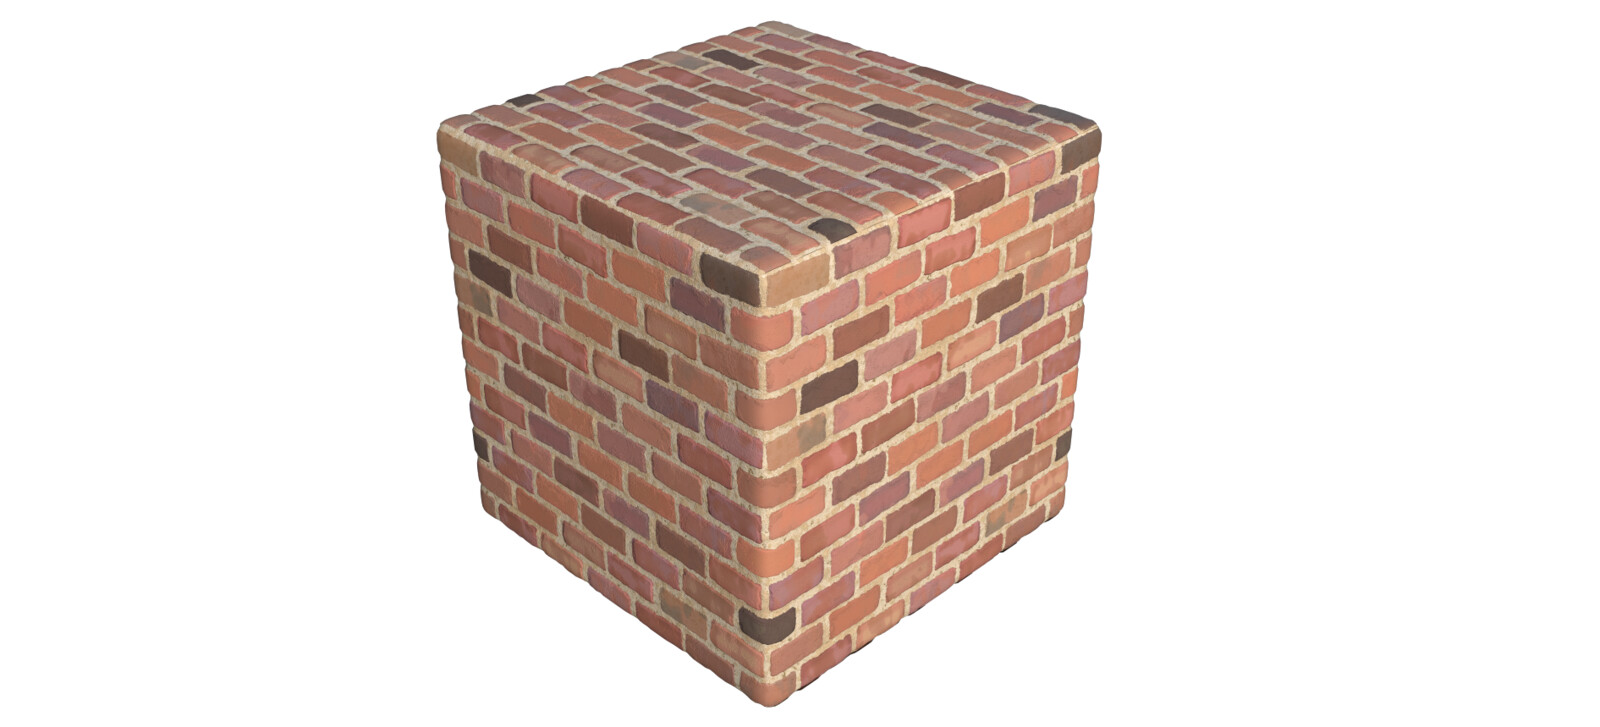 Bricks quarter view